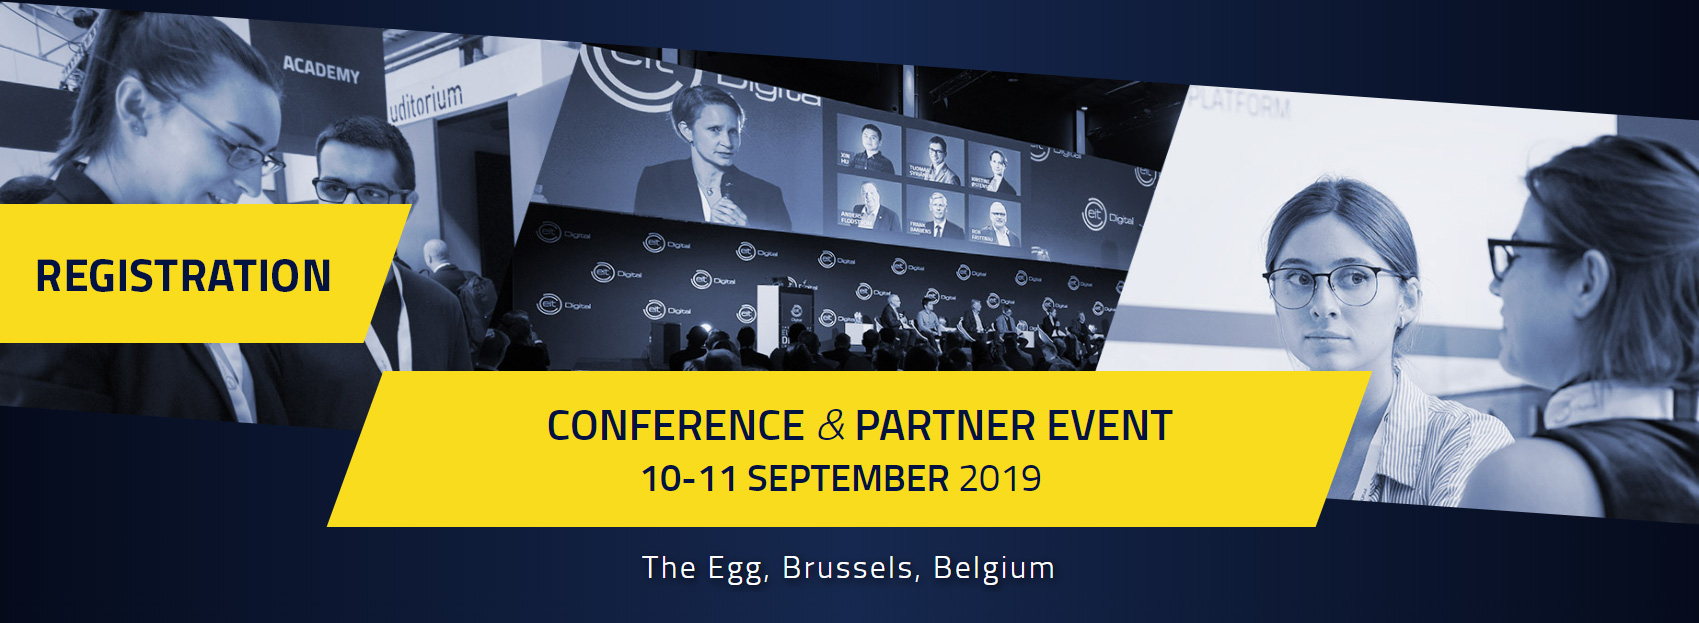 EIT Digital Conference & Partner Event 2019